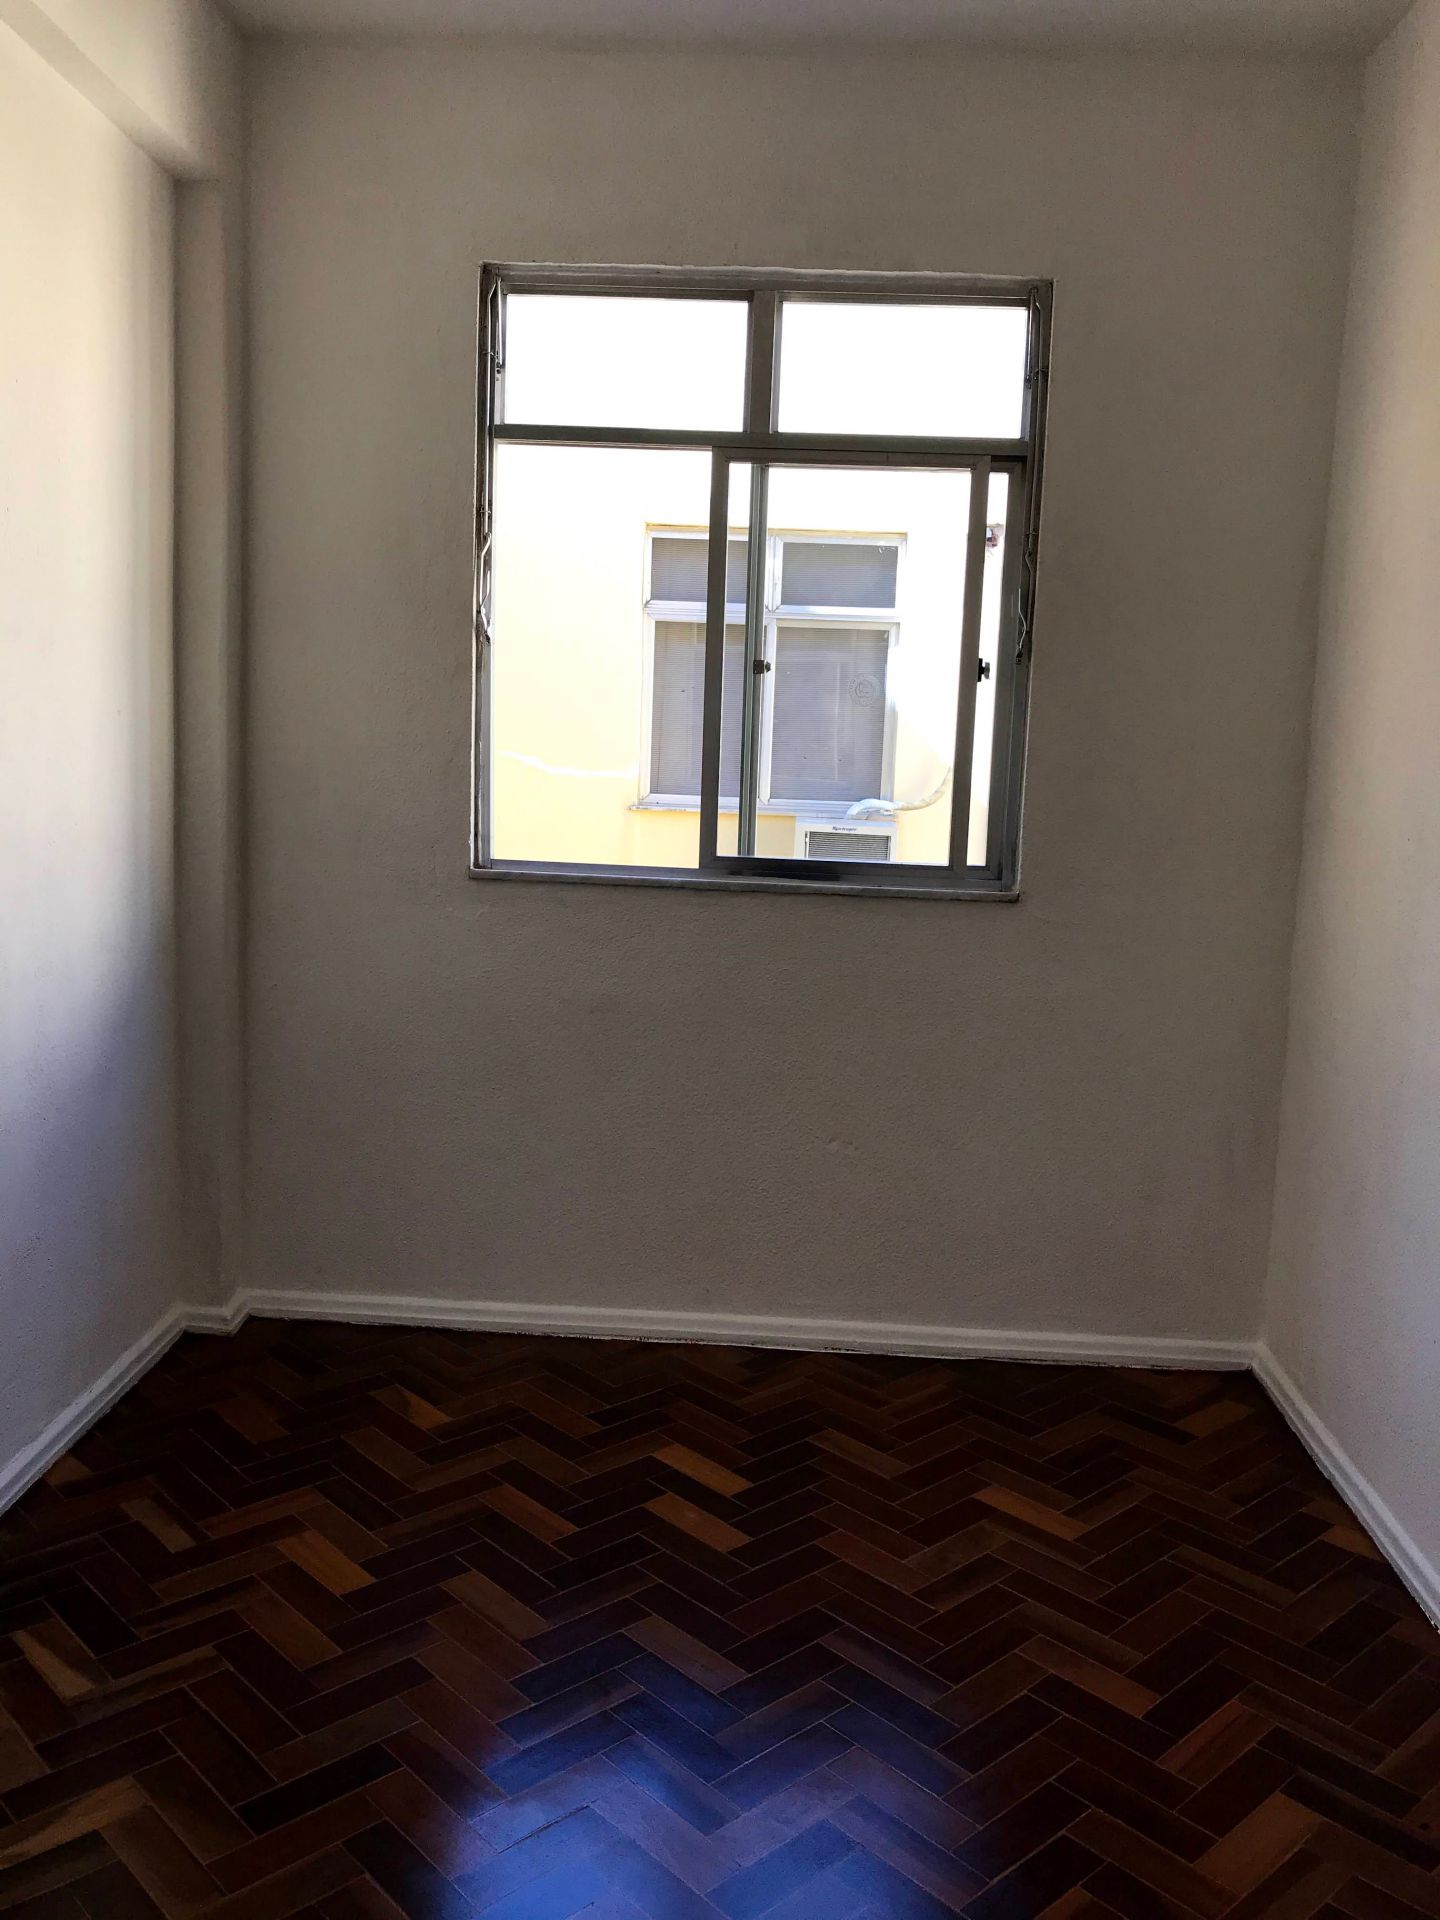 FOTO 9 - Apartamento à venda Rua Francisco,Praça Seca, Rio de Janeiro - R$ 180.000 - RF170 - 10